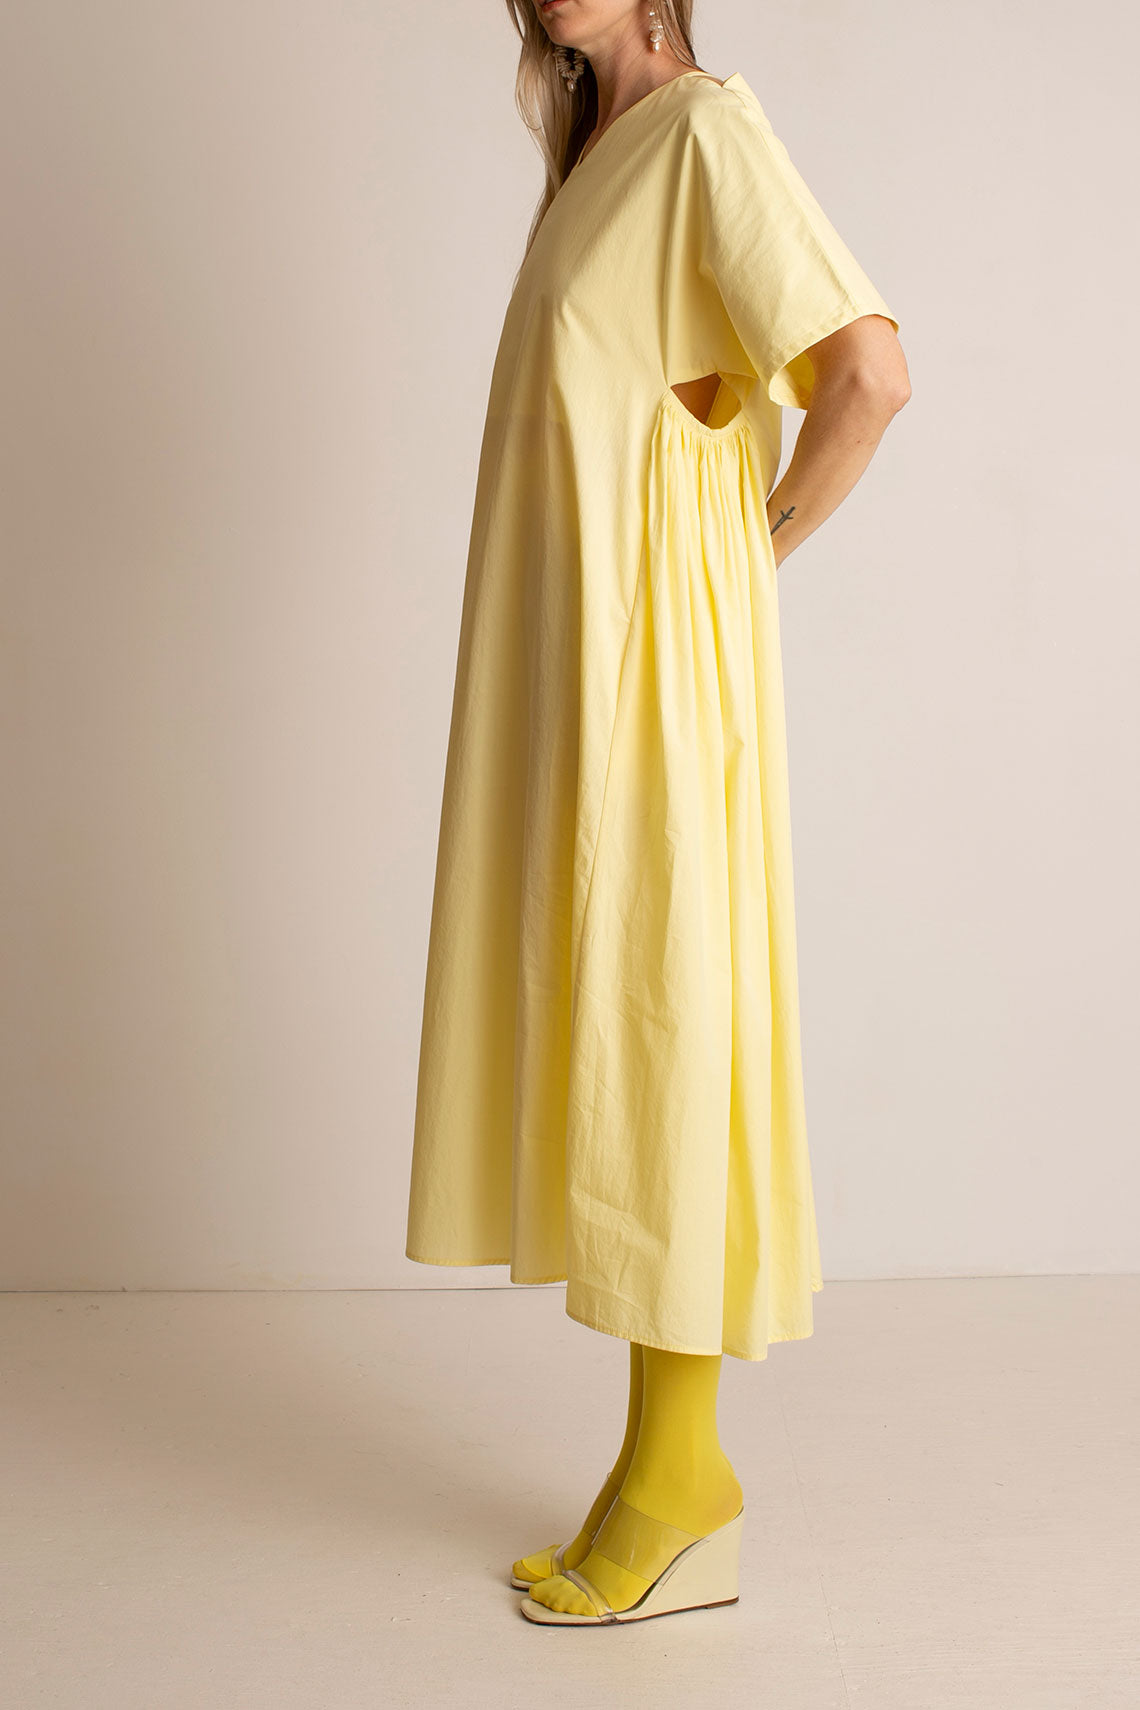 Lemon Star Dress